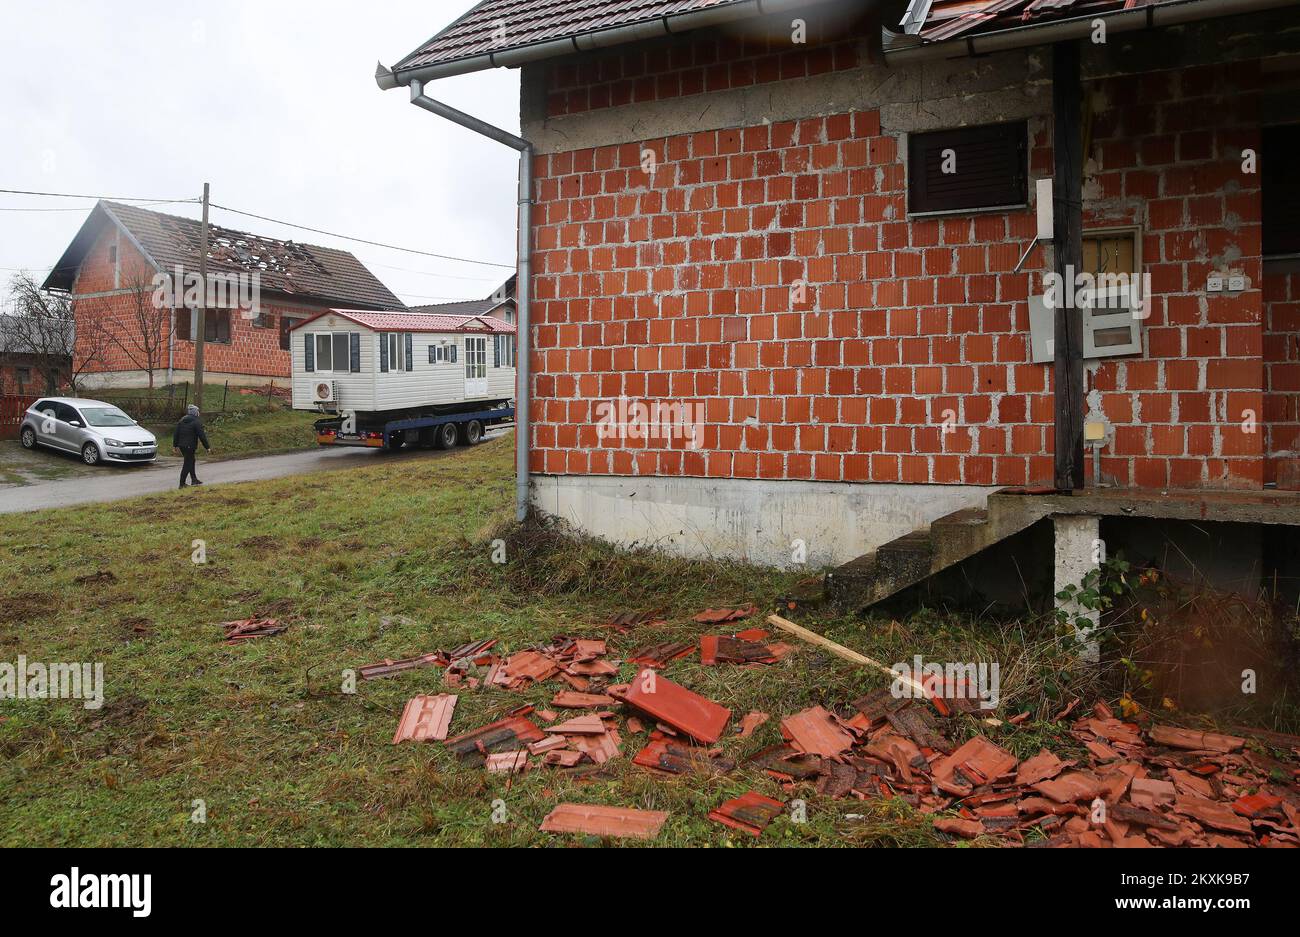 Nach einem starken Erdbeben in Kroatien am 21. Dezember 2020 wurde in Novo Selo Glinsko ein beschädigtes Haus vorgefunden. Foto: Zeljko Lukunic/PIXSELL Stockfoto